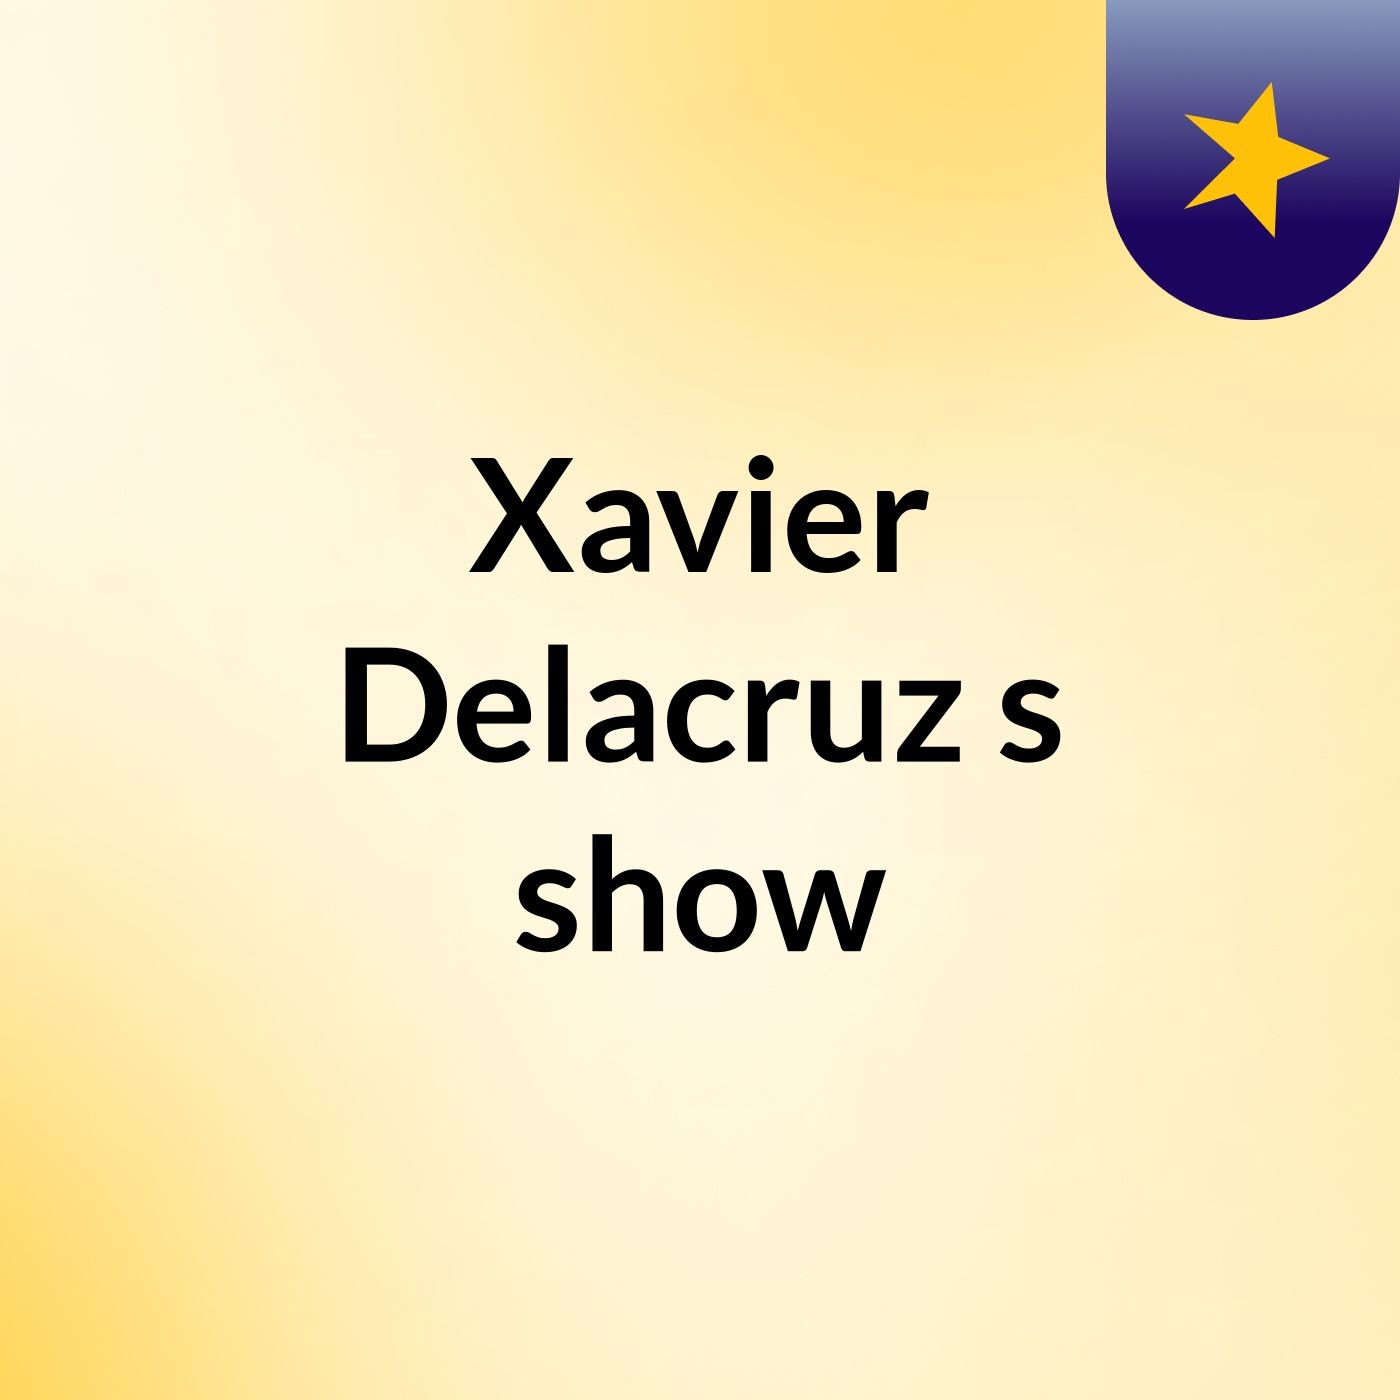 Episode 8 - Xavier Delacruz's show